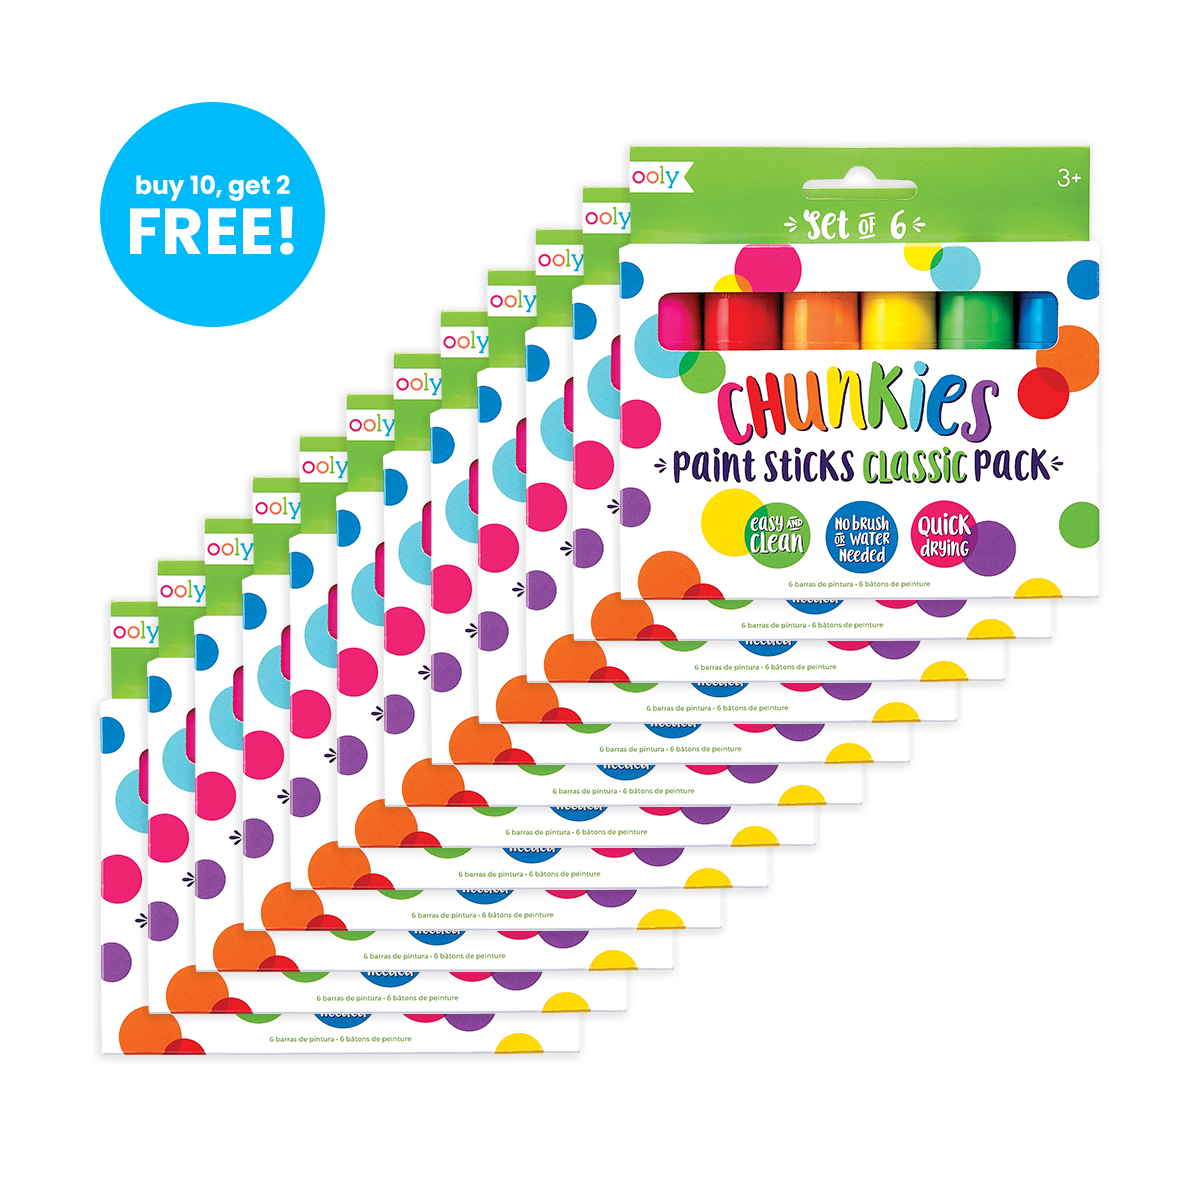 Ooly Chunkies Paint Sticks (Set of 12)